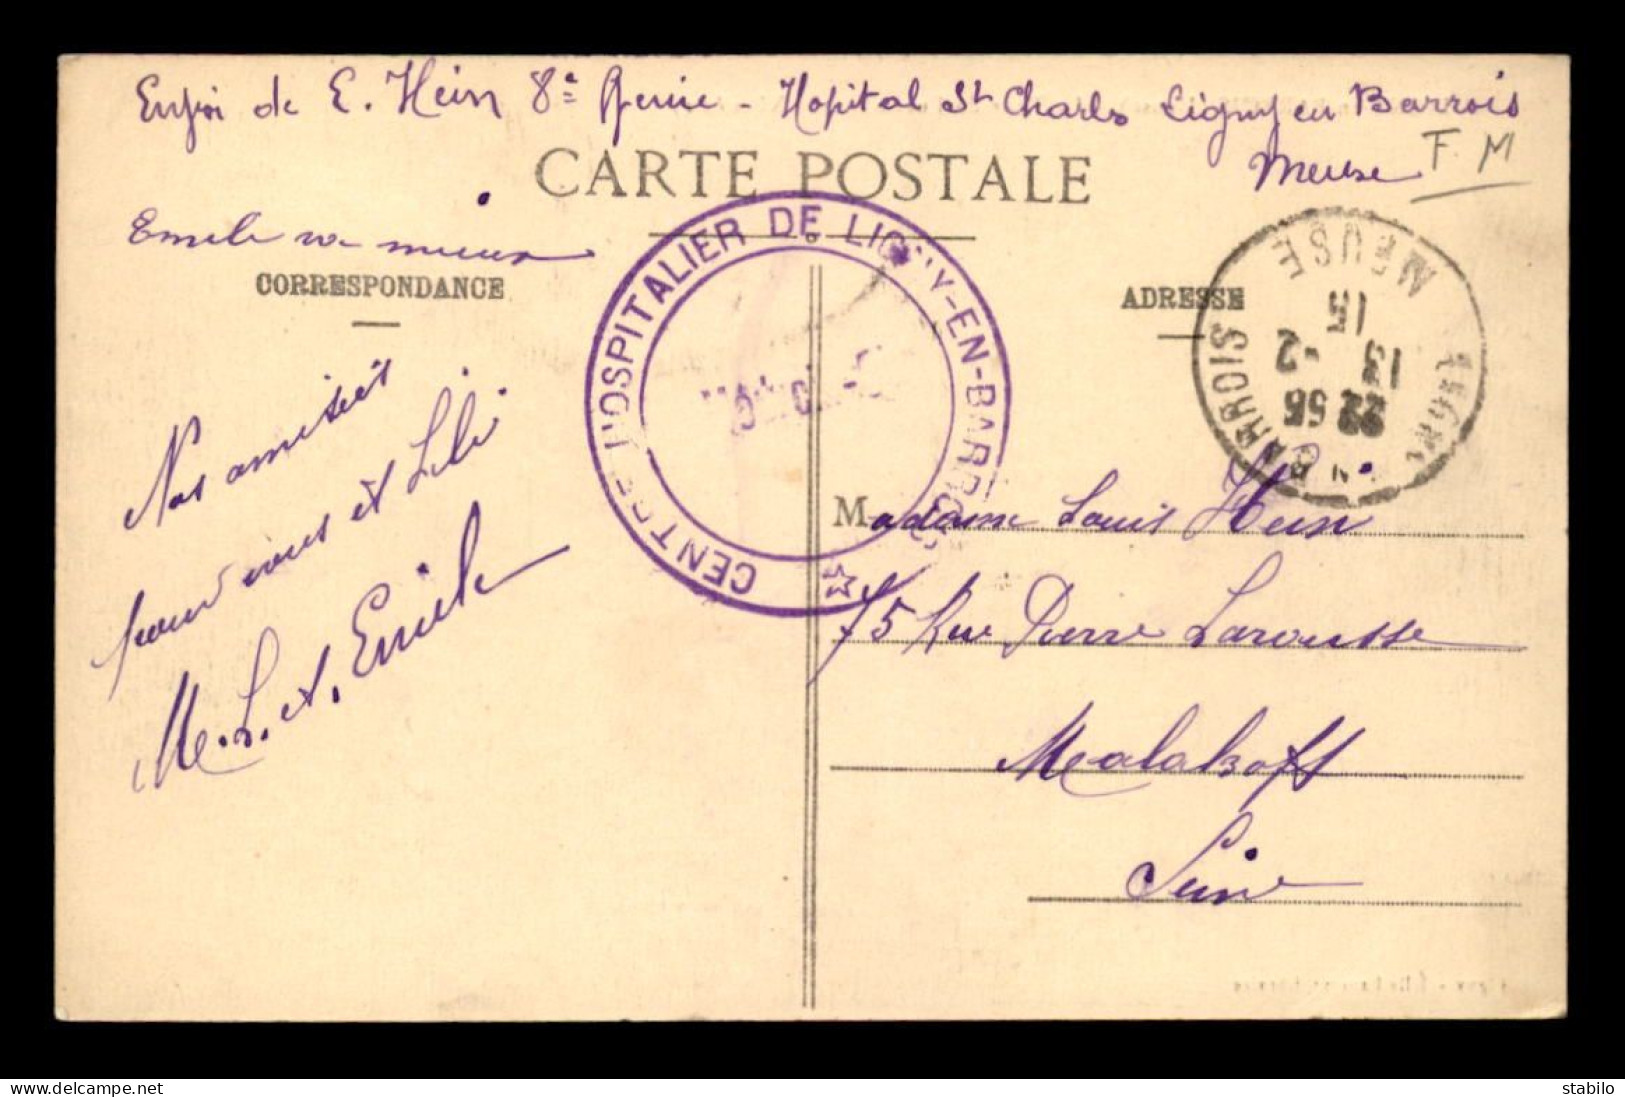 GUERRE 14/18 - CACHET DU MEDECIN-CHEF DU CENTRE HOSPITALIER DE LIGNY-EN-BARROIS - HOPITAL SAINT-CHARLES - 1. Weltkrieg 1914-1918